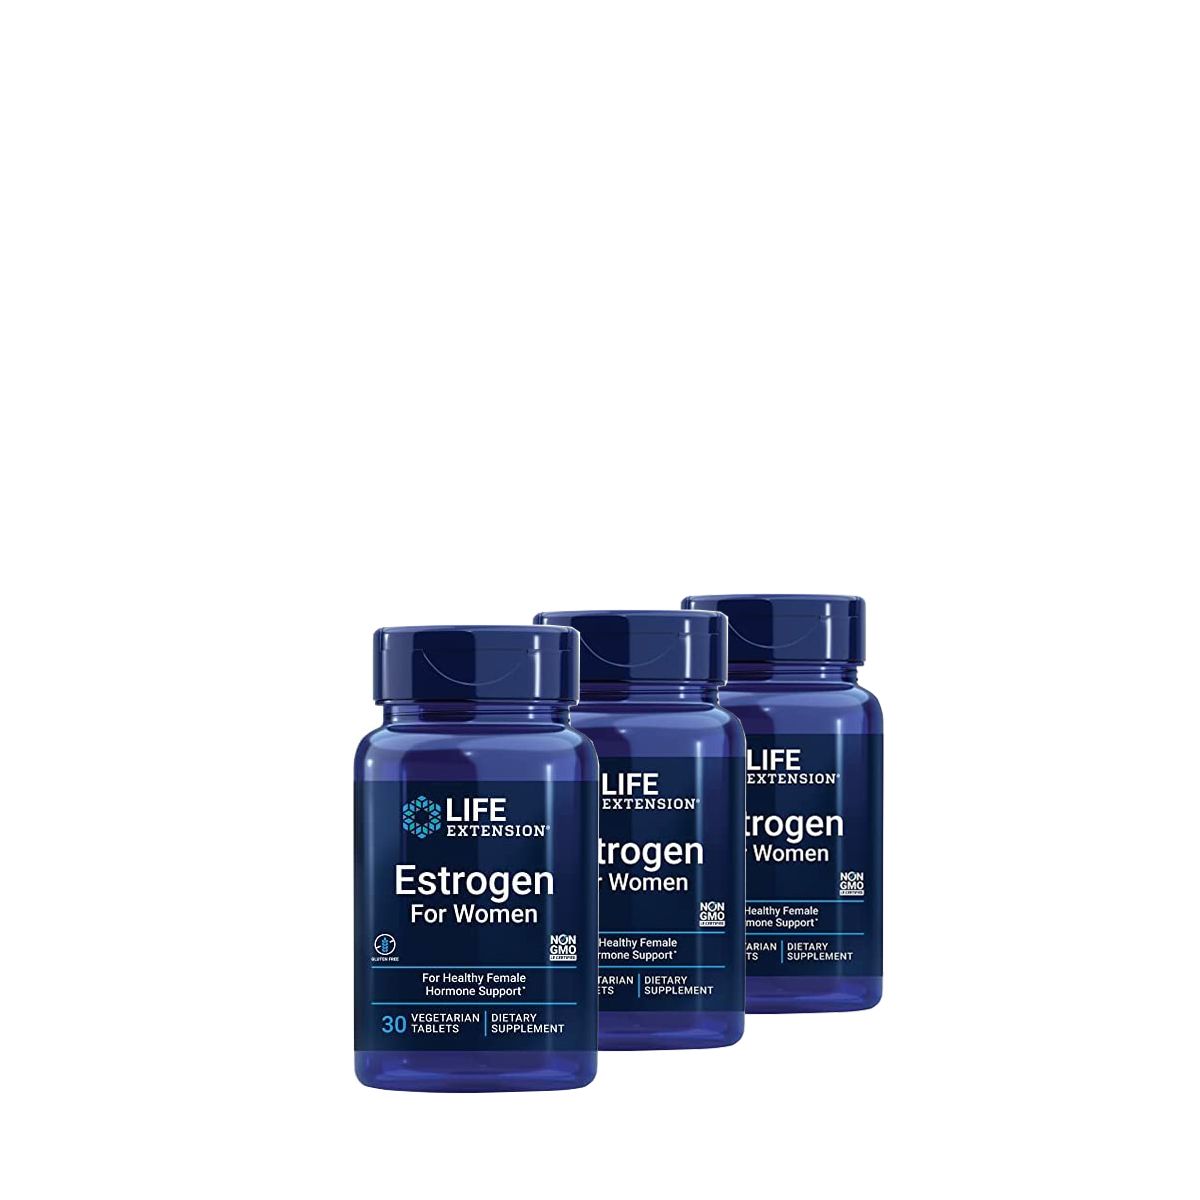 Ösztrogén támogató komplex, Life Extension Estrogen for Women, 3x30 tabletta